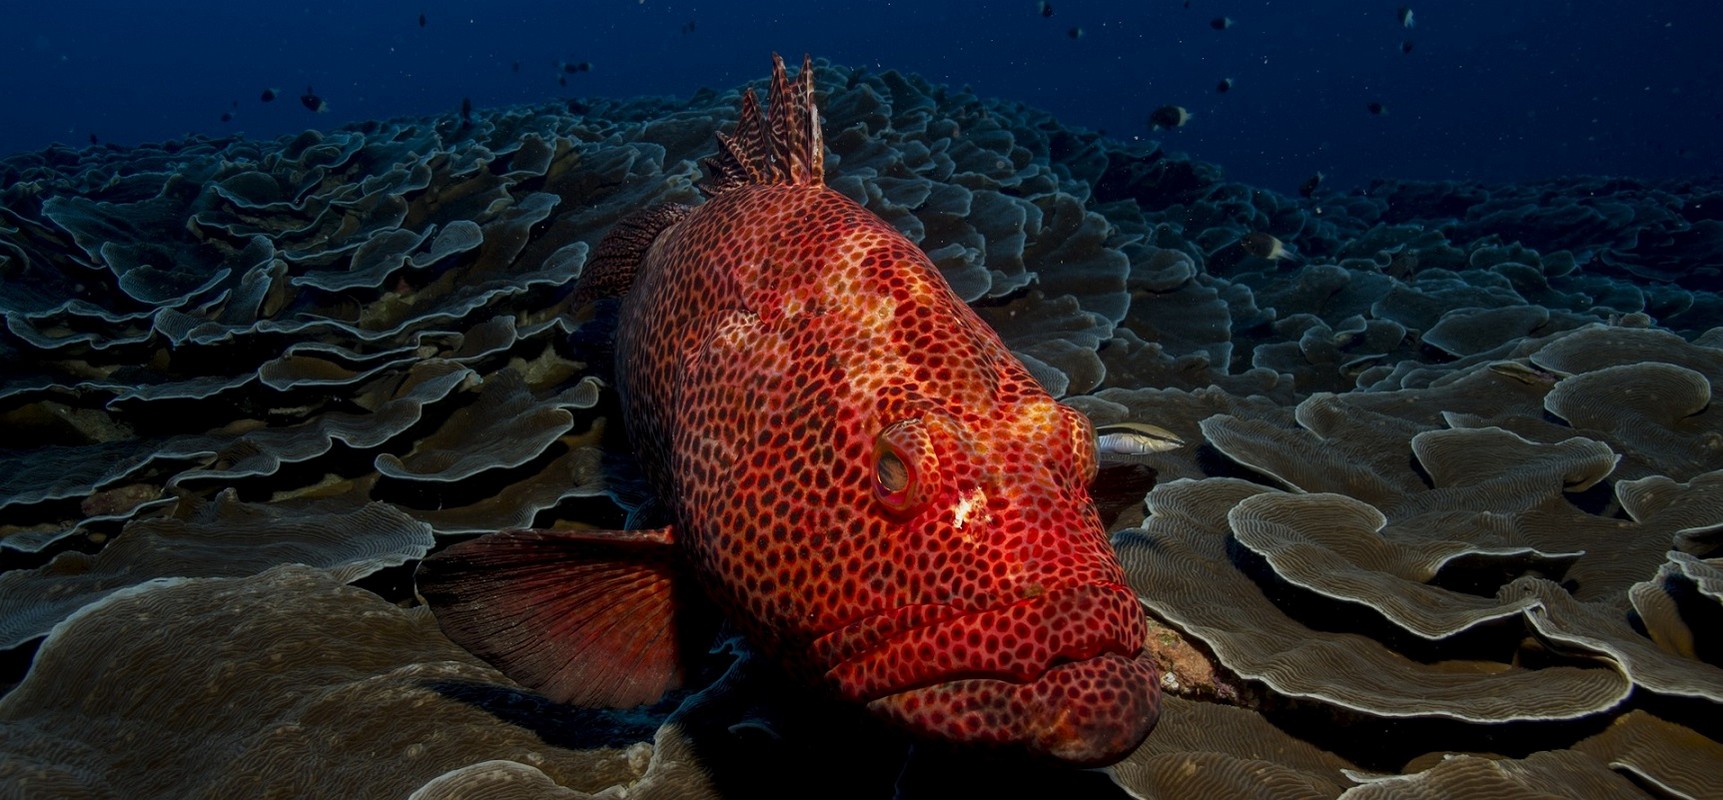 Red Sea Liveaboard Diving - Grouper